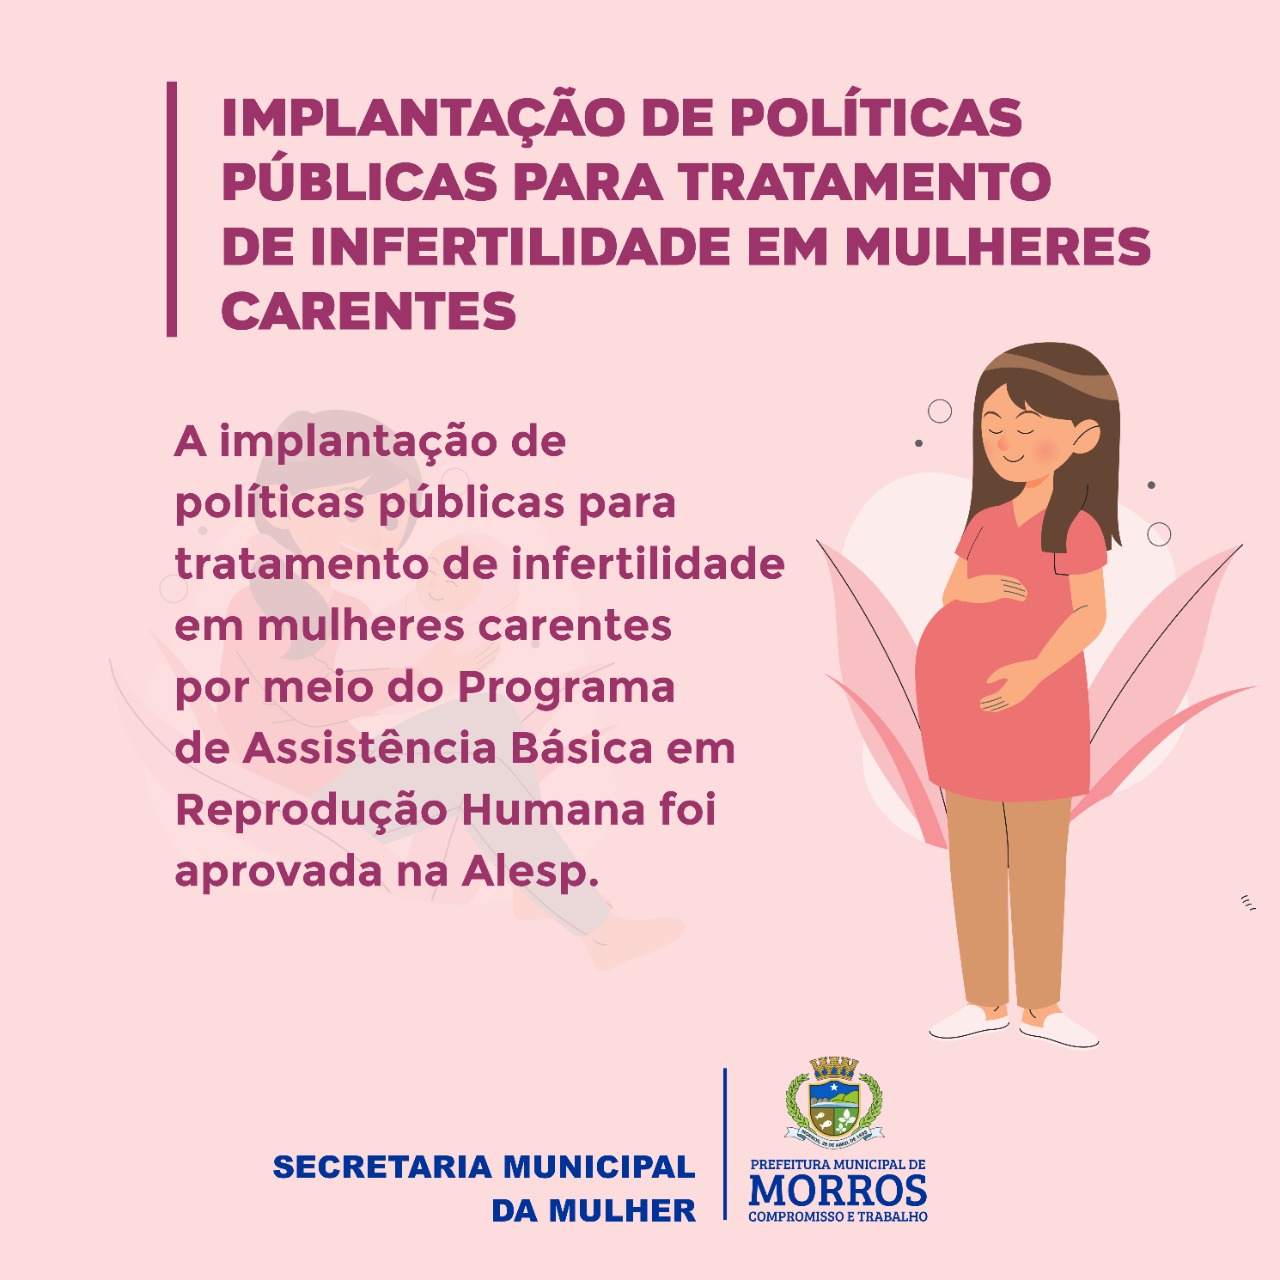 implantação de políticas públicas para tratamento de infertilidade em mulheres carentes por meio do Programa de Assistência Básica em Reprodução Humana foi aprovada na Alesp